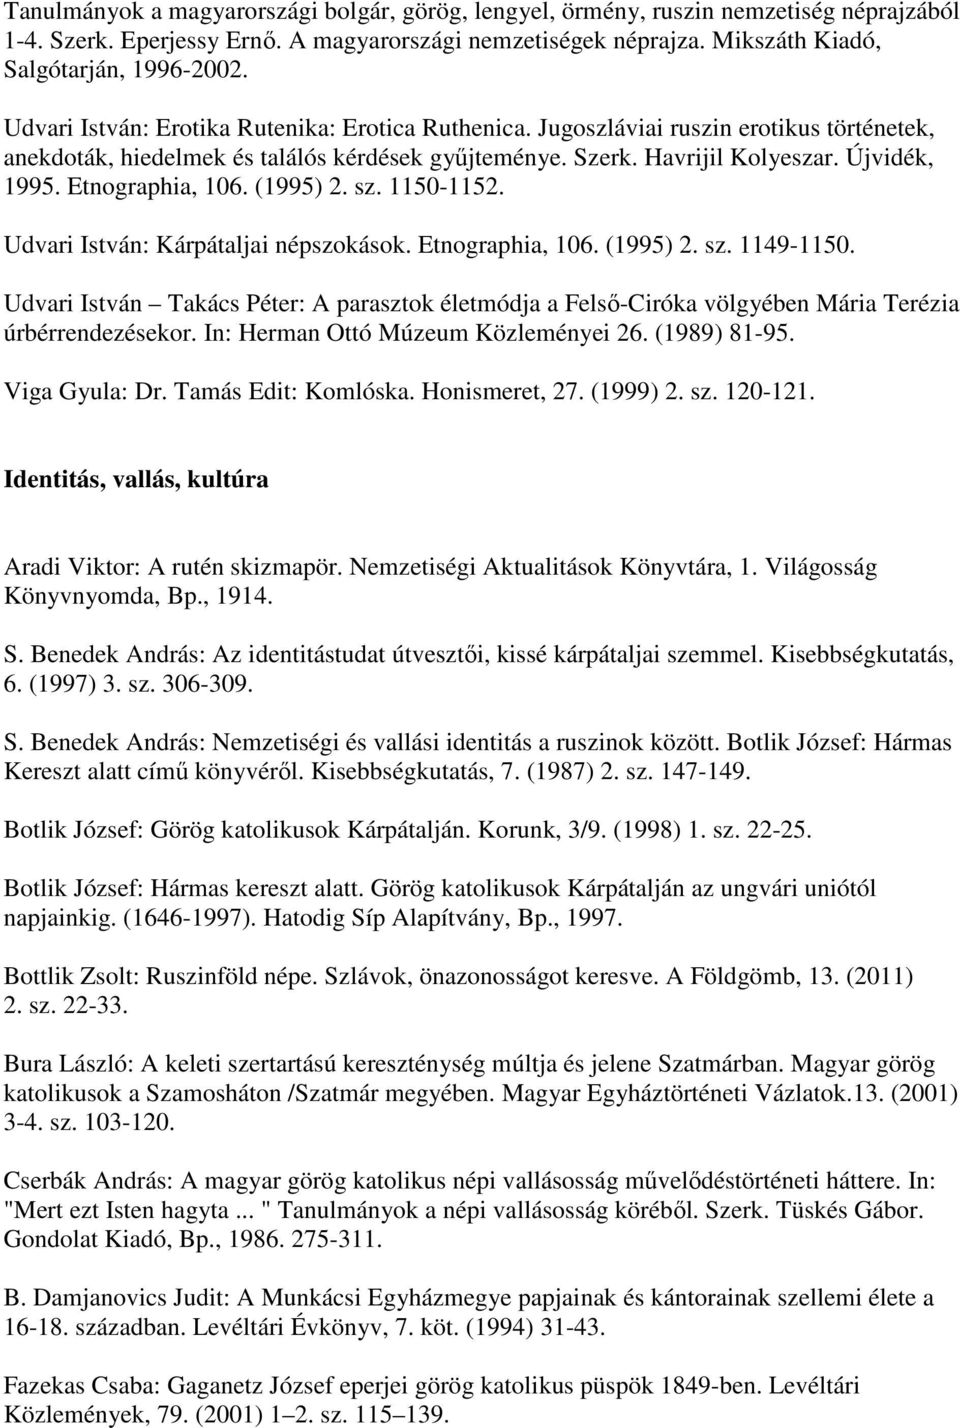 Etnographia, 106. (1995) 2. sz. 1150-1152. Udvari István: Kárpátaljai népszokások. Etnographia, 106. (1995) 2. sz. 1149-1150.